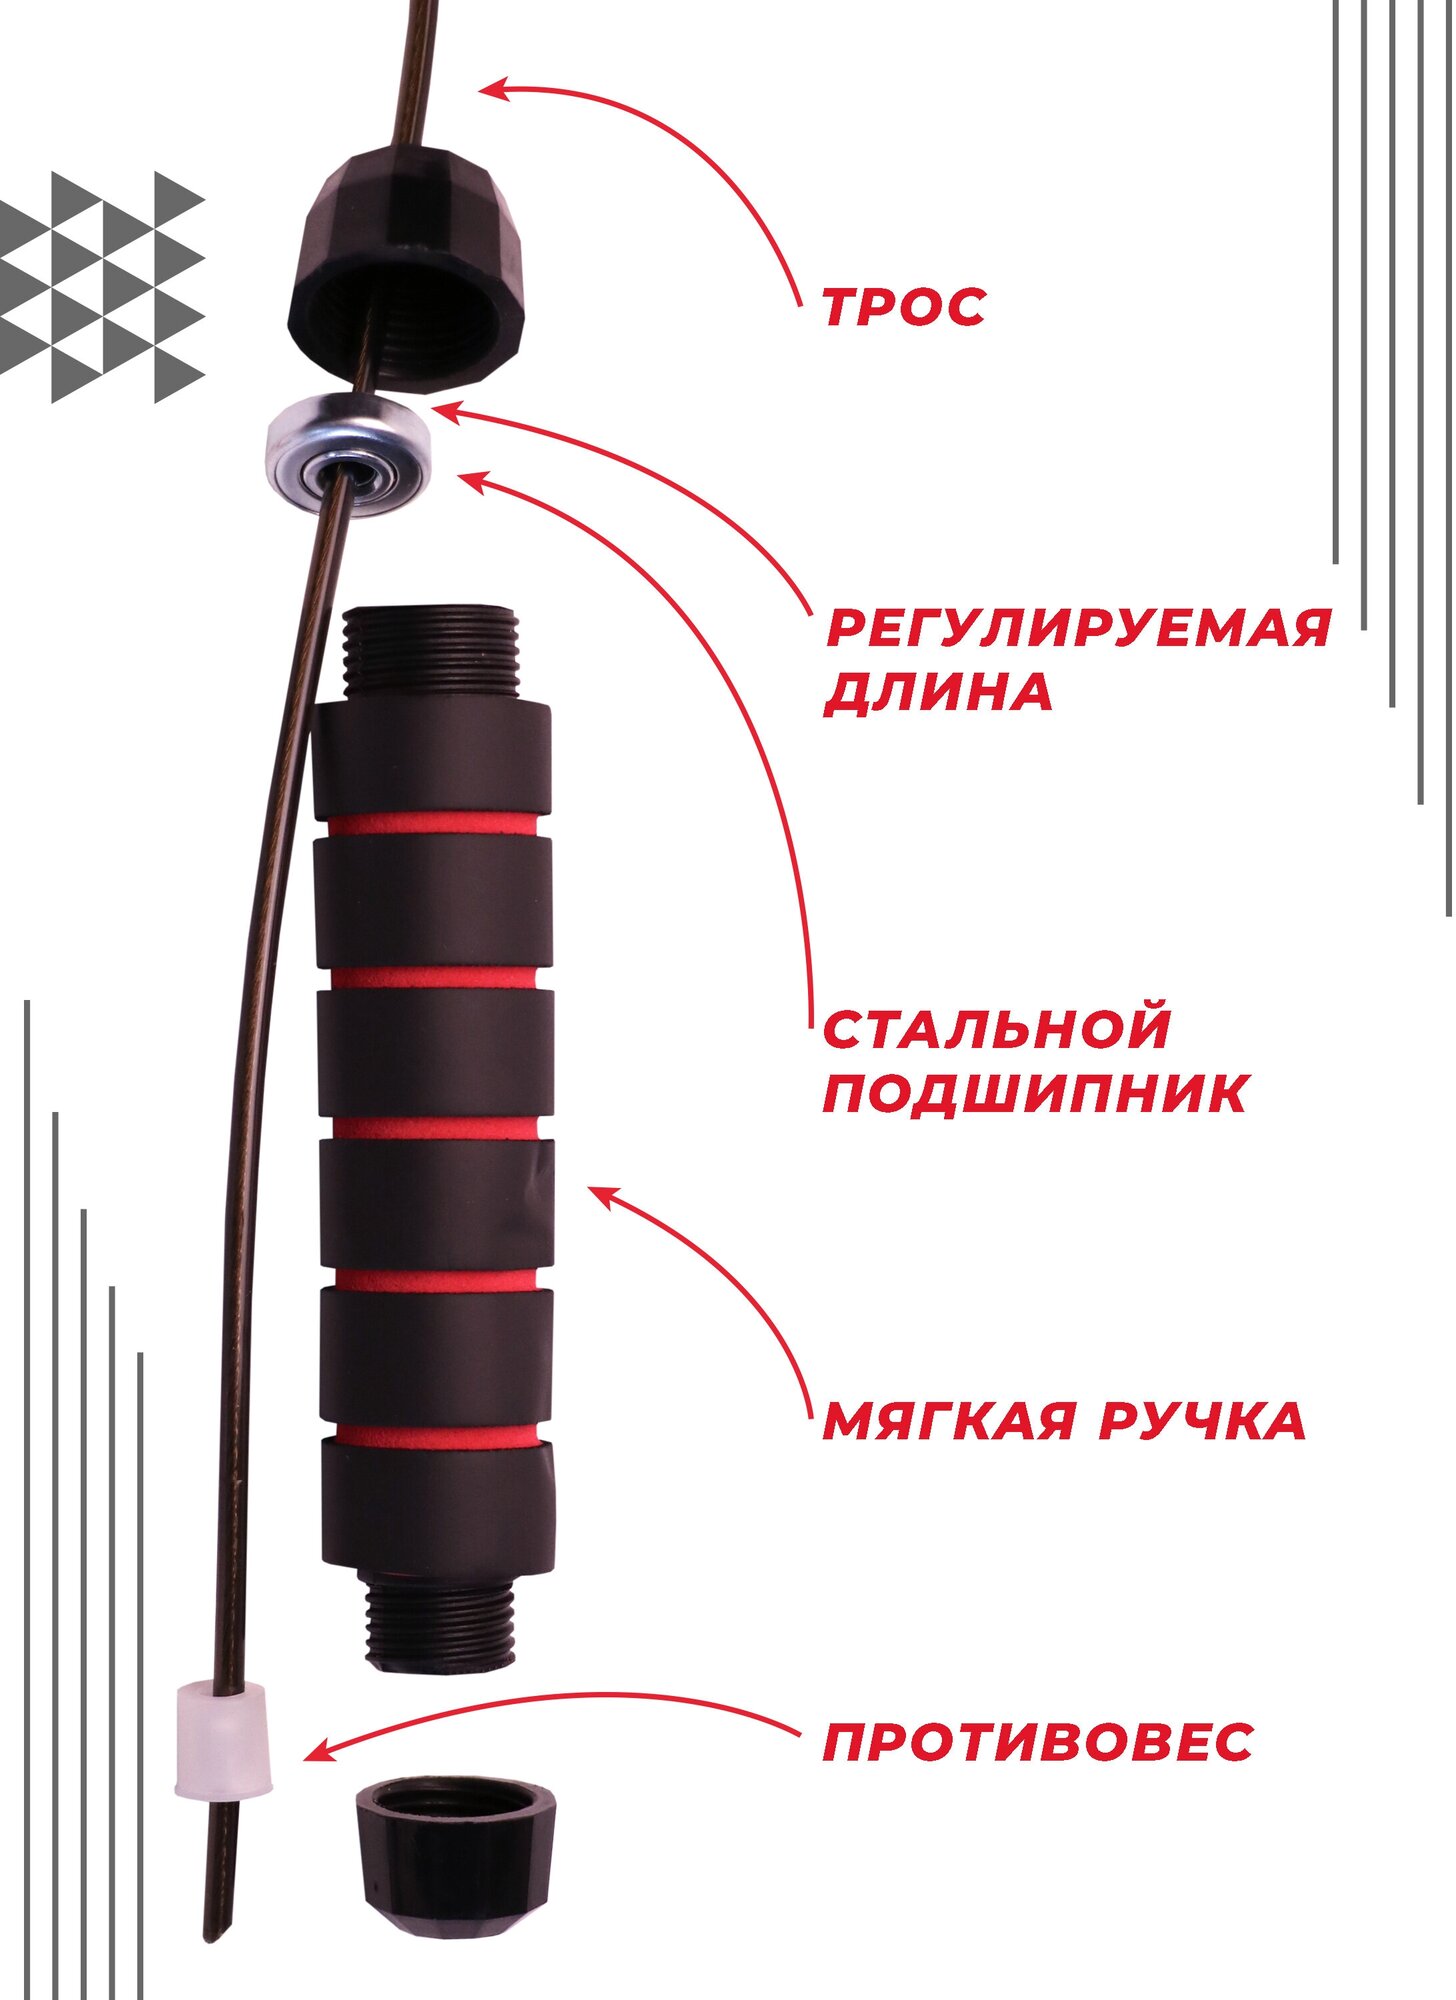 Скоростная скакалка Boomshakalaka для фитнеса, с подшипником, 280 см, черная с красными вставками, регулируемая длина, противоскользящие ручки